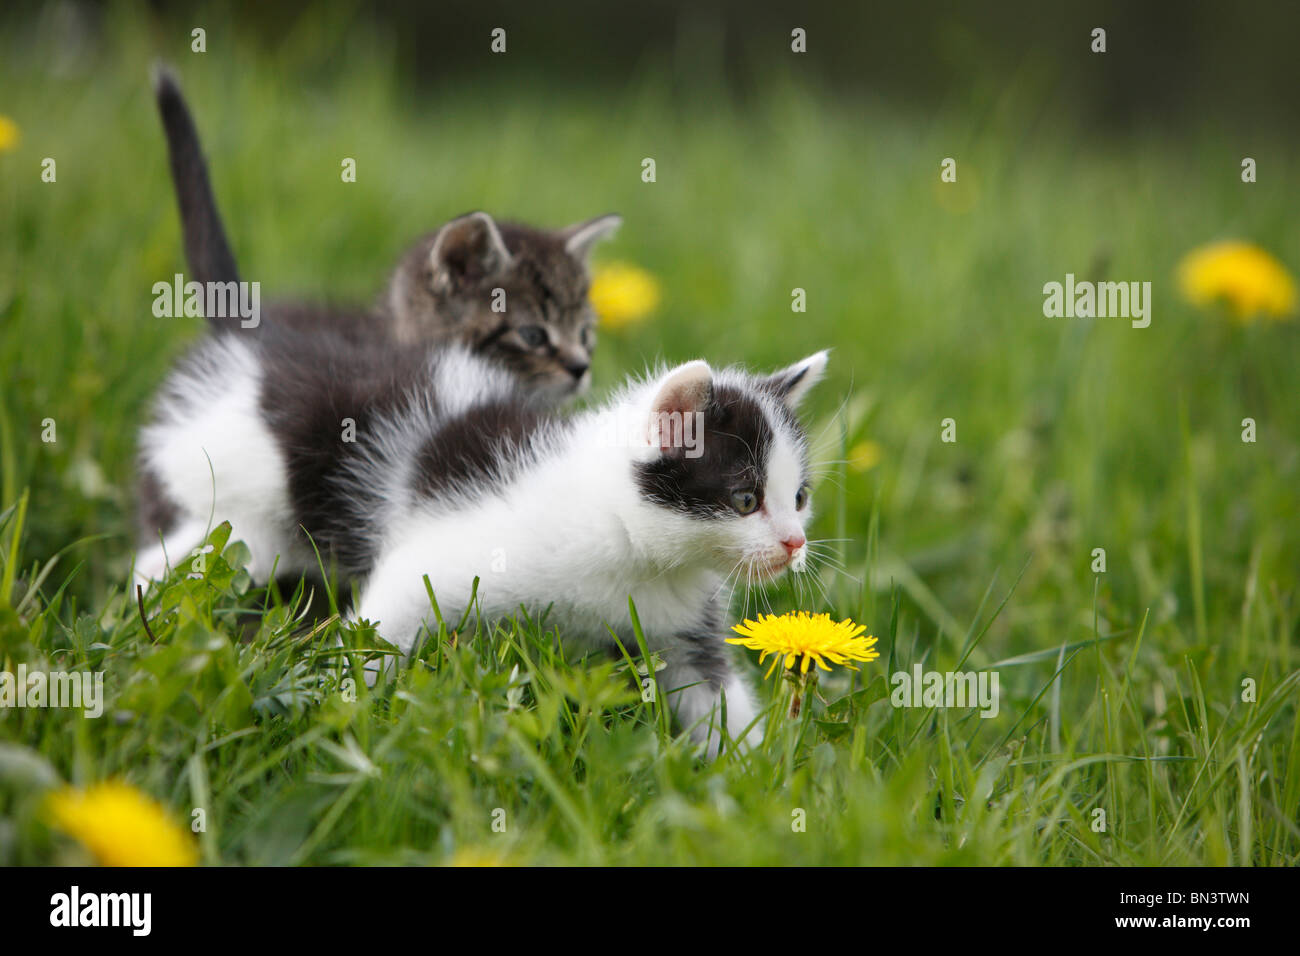 domestic cat, house cat, European Shorthair (Felis silvestris f. catus), two 5 weeks old kitten in a dandelion meadow, Germany Stock Photo